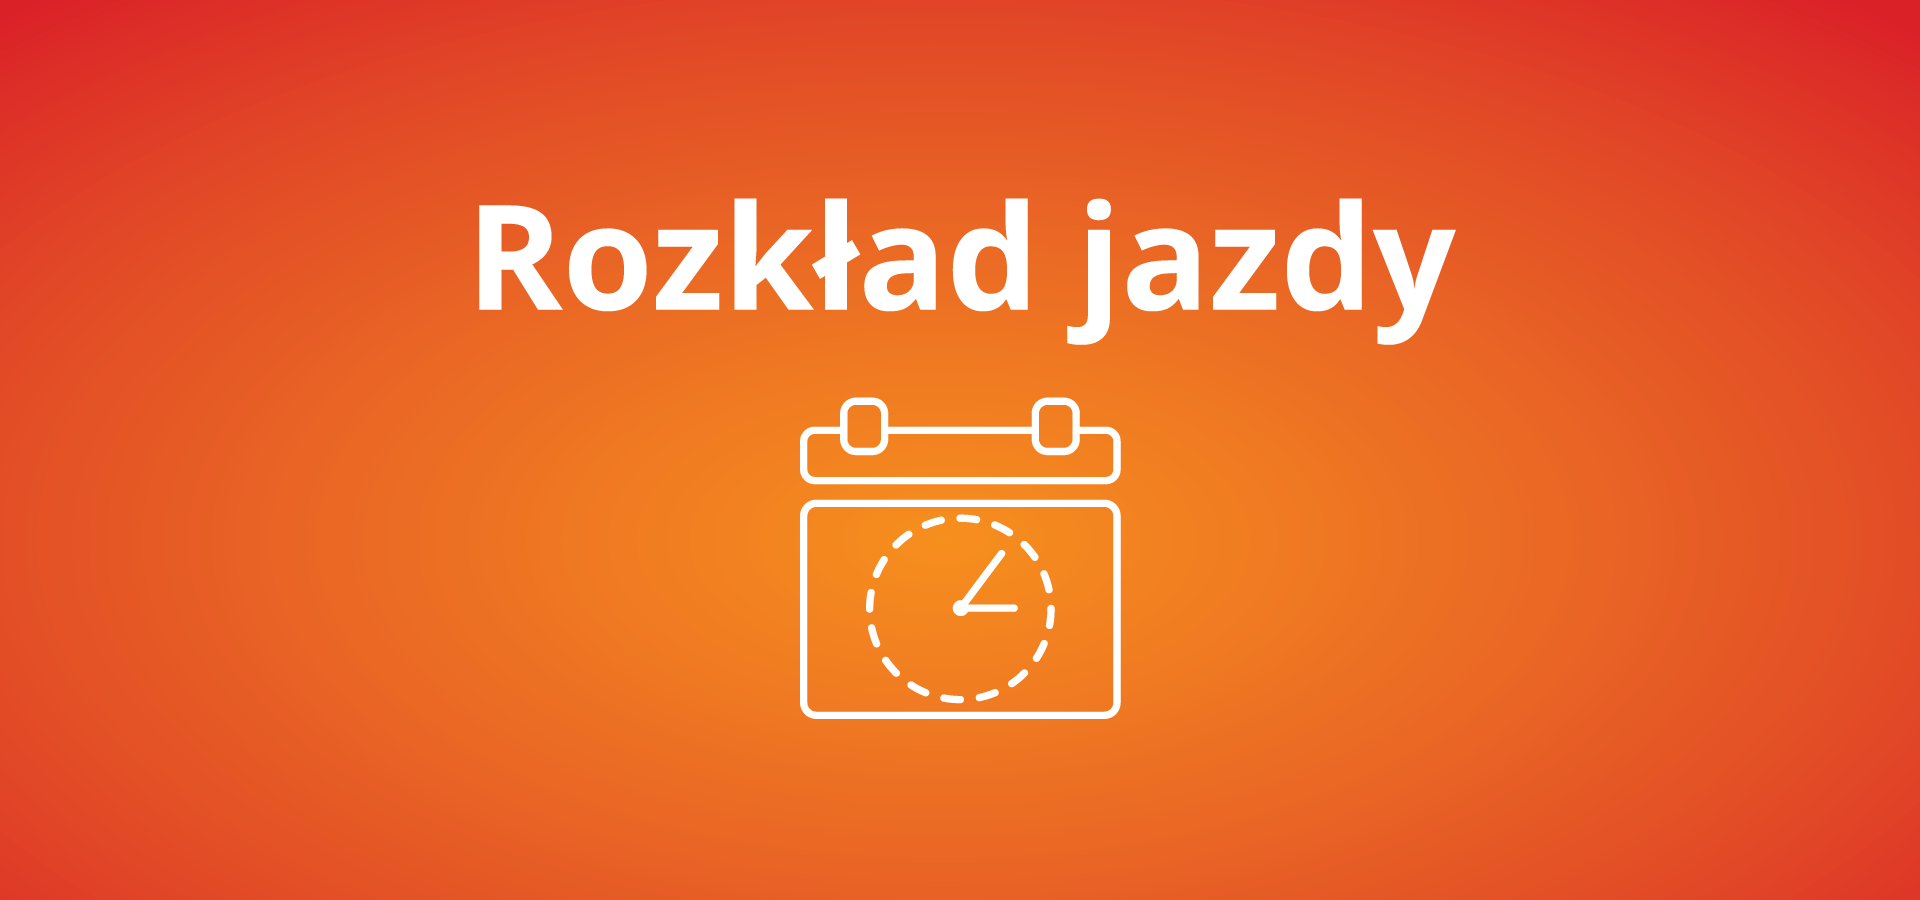 Zmiany w rozkładzie jazdy pociągów od 6 listopada 2022 r. w woj. świętokrzyskim